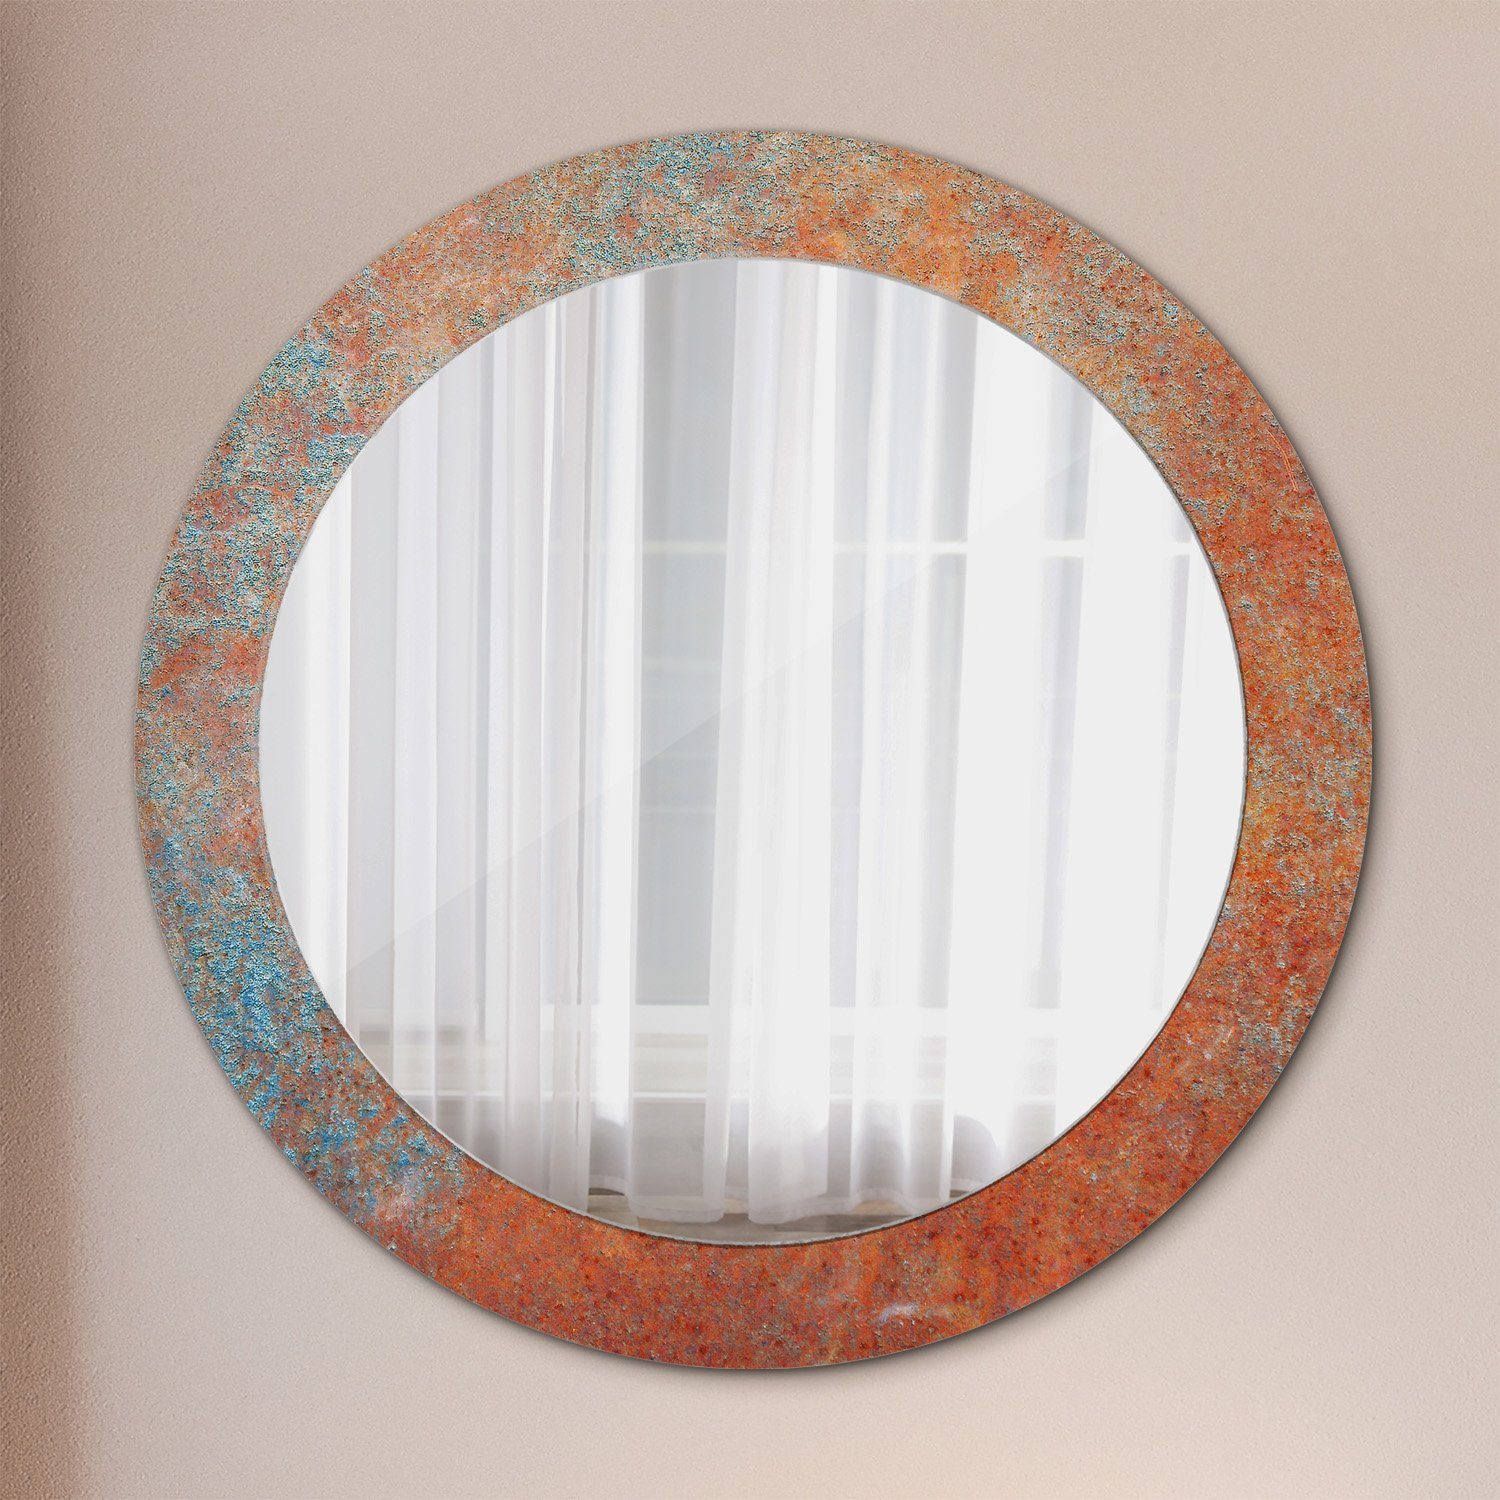 Tulup Dekospiegel mit Aufdruck Badezimmerspiegel Wandspiegel Rundspiegel Rund: Ø70 cm, Wohnzimmer Spiegel Rostig Metall